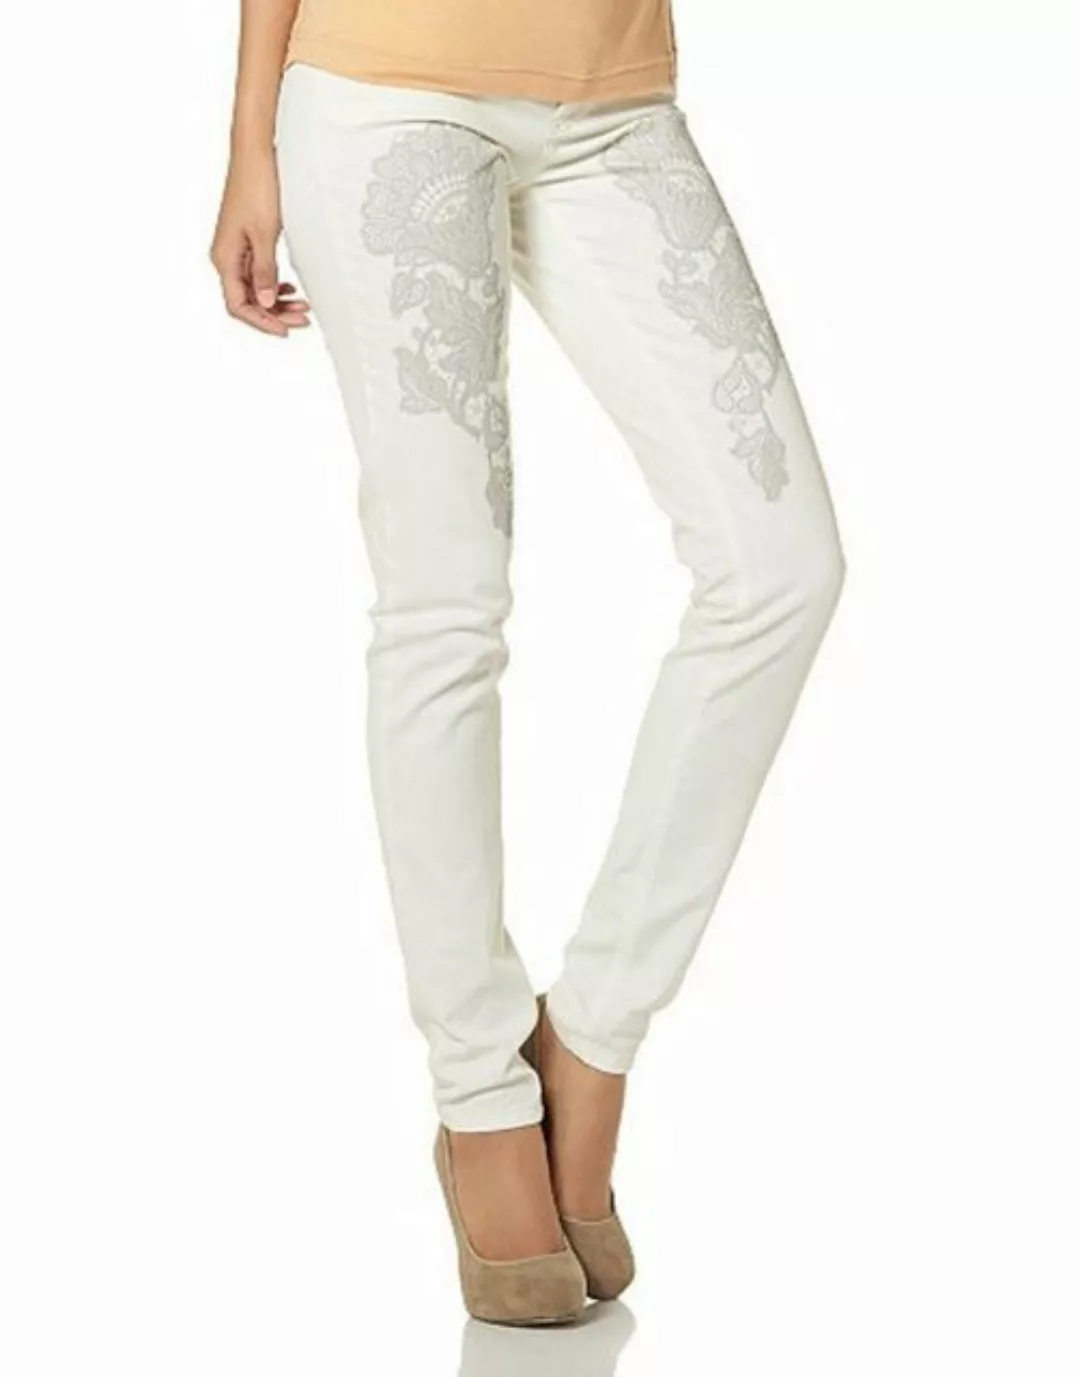 YESET Röhrenhose Damen Hose Röhrenhose Röhre Jeans Chino Stretch weiß 23200 günstig online kaufen